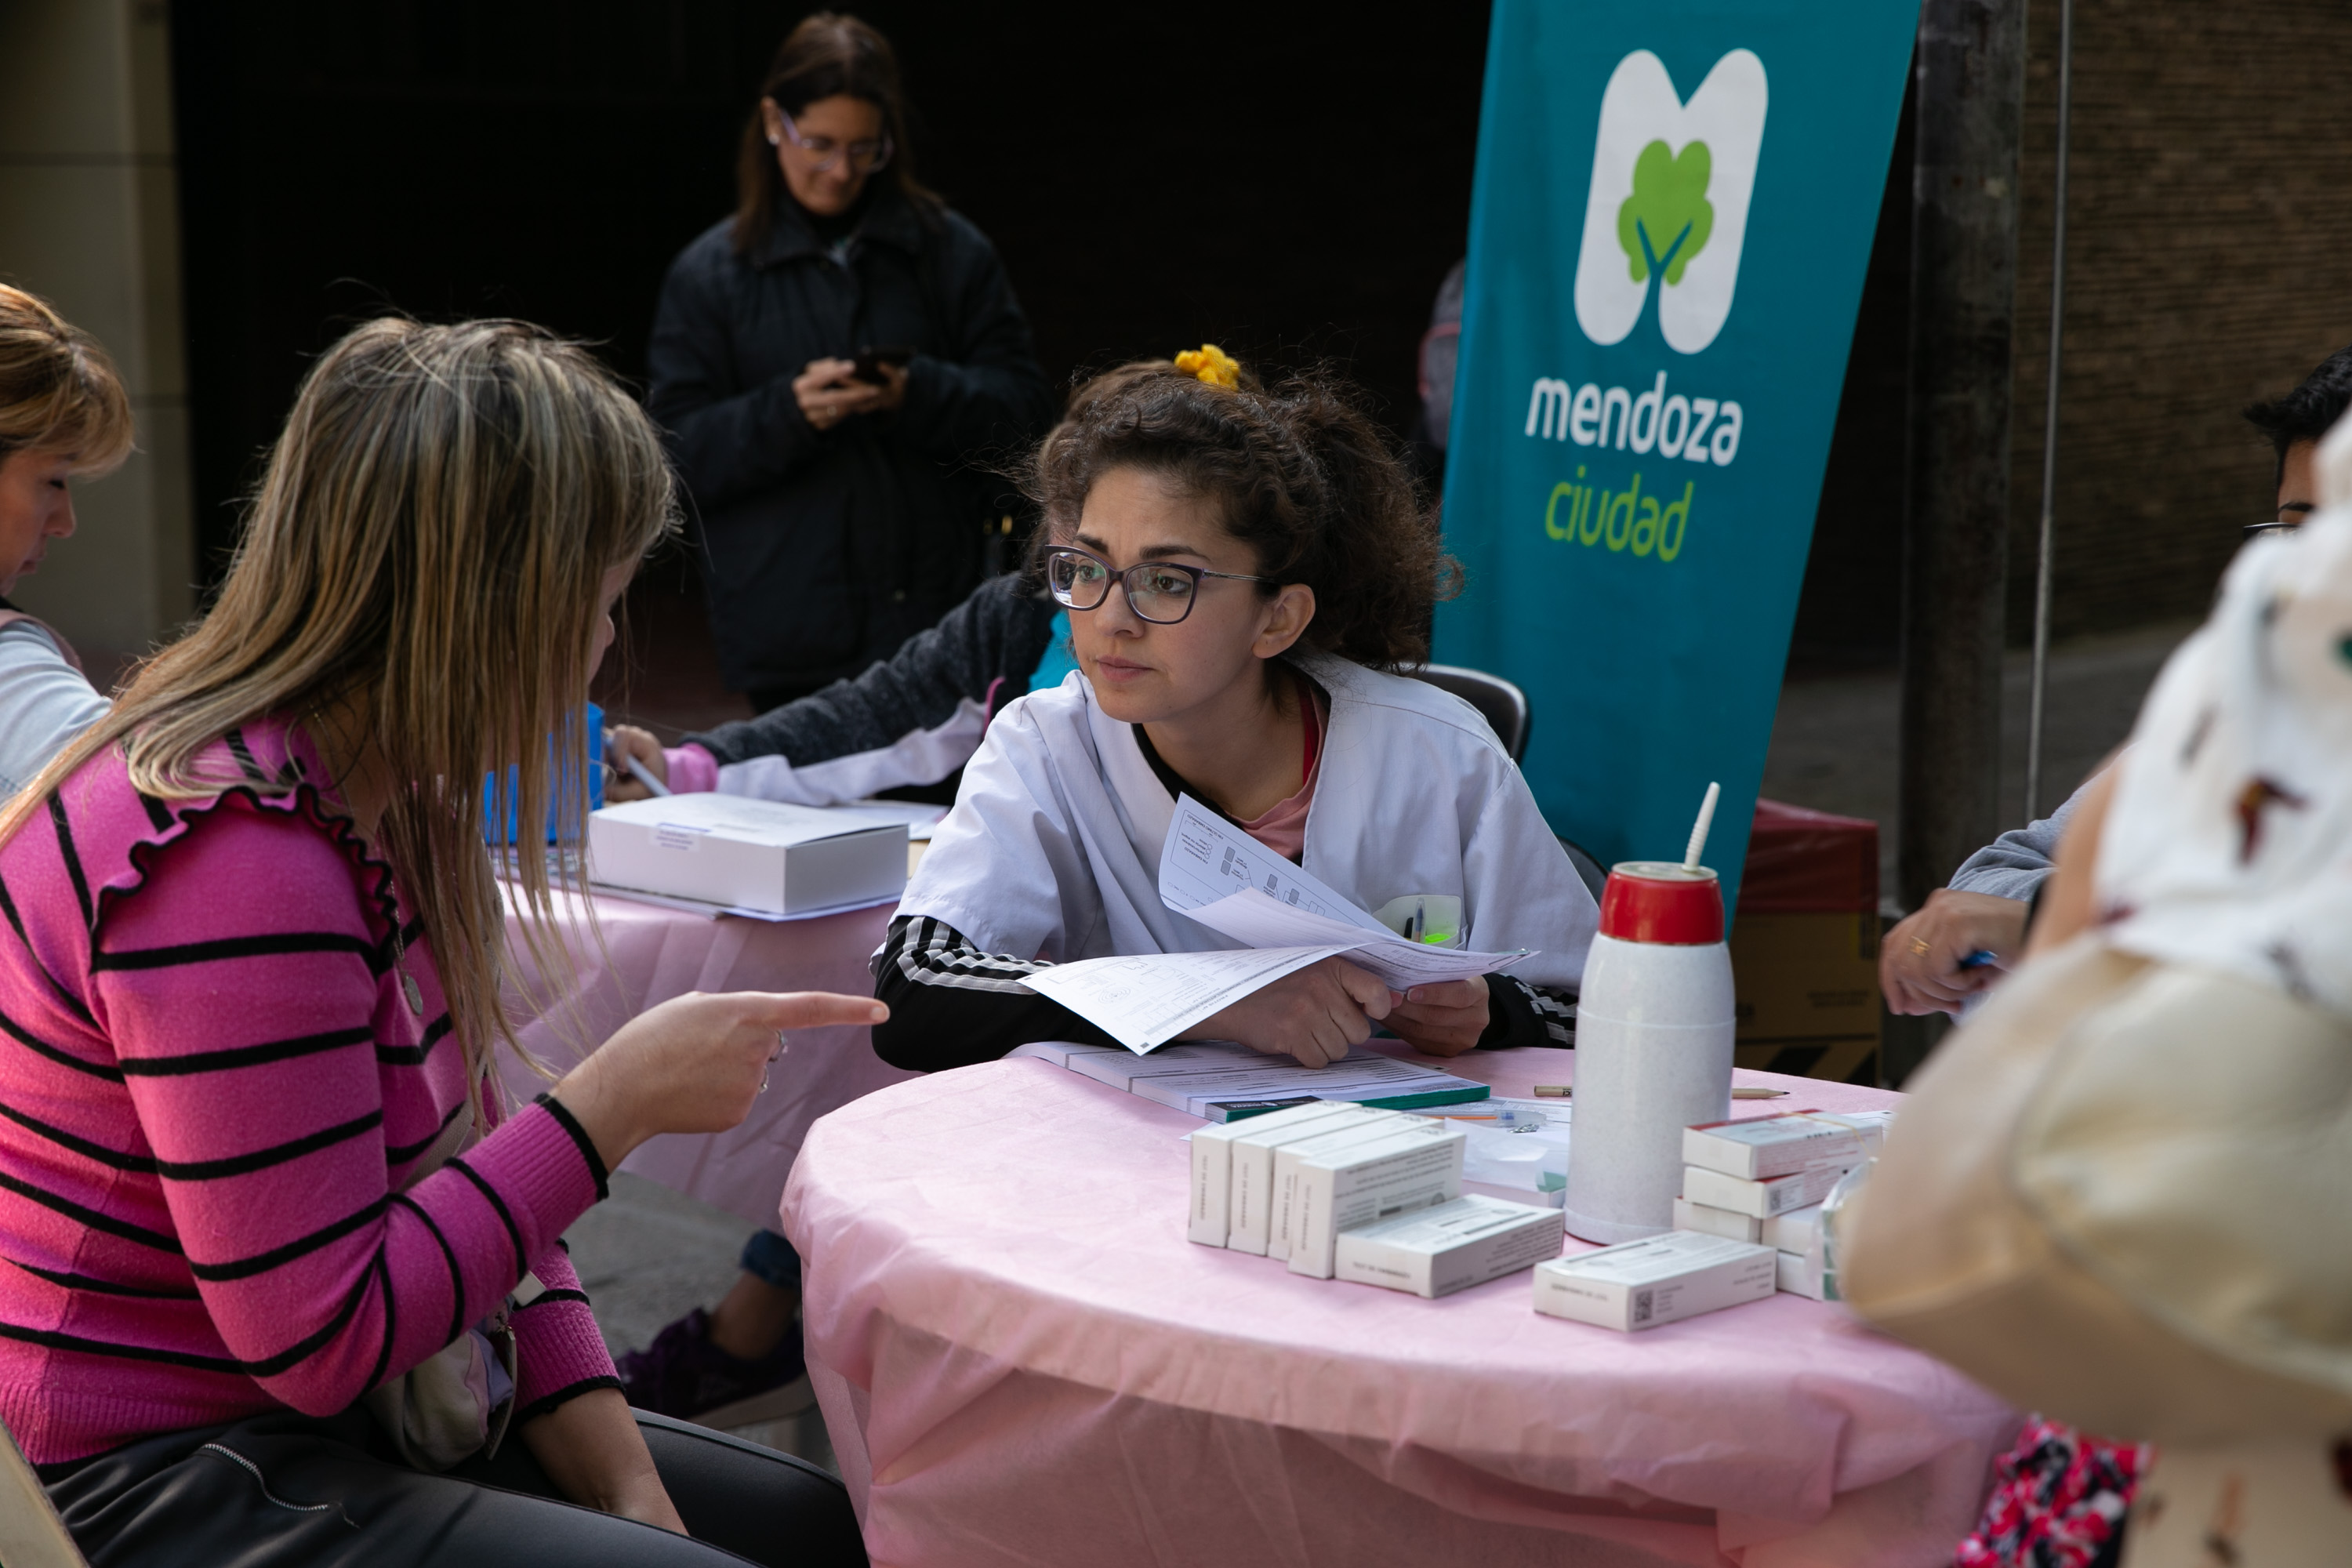 Consejería en salud reproductiva Ciudad Mendoza